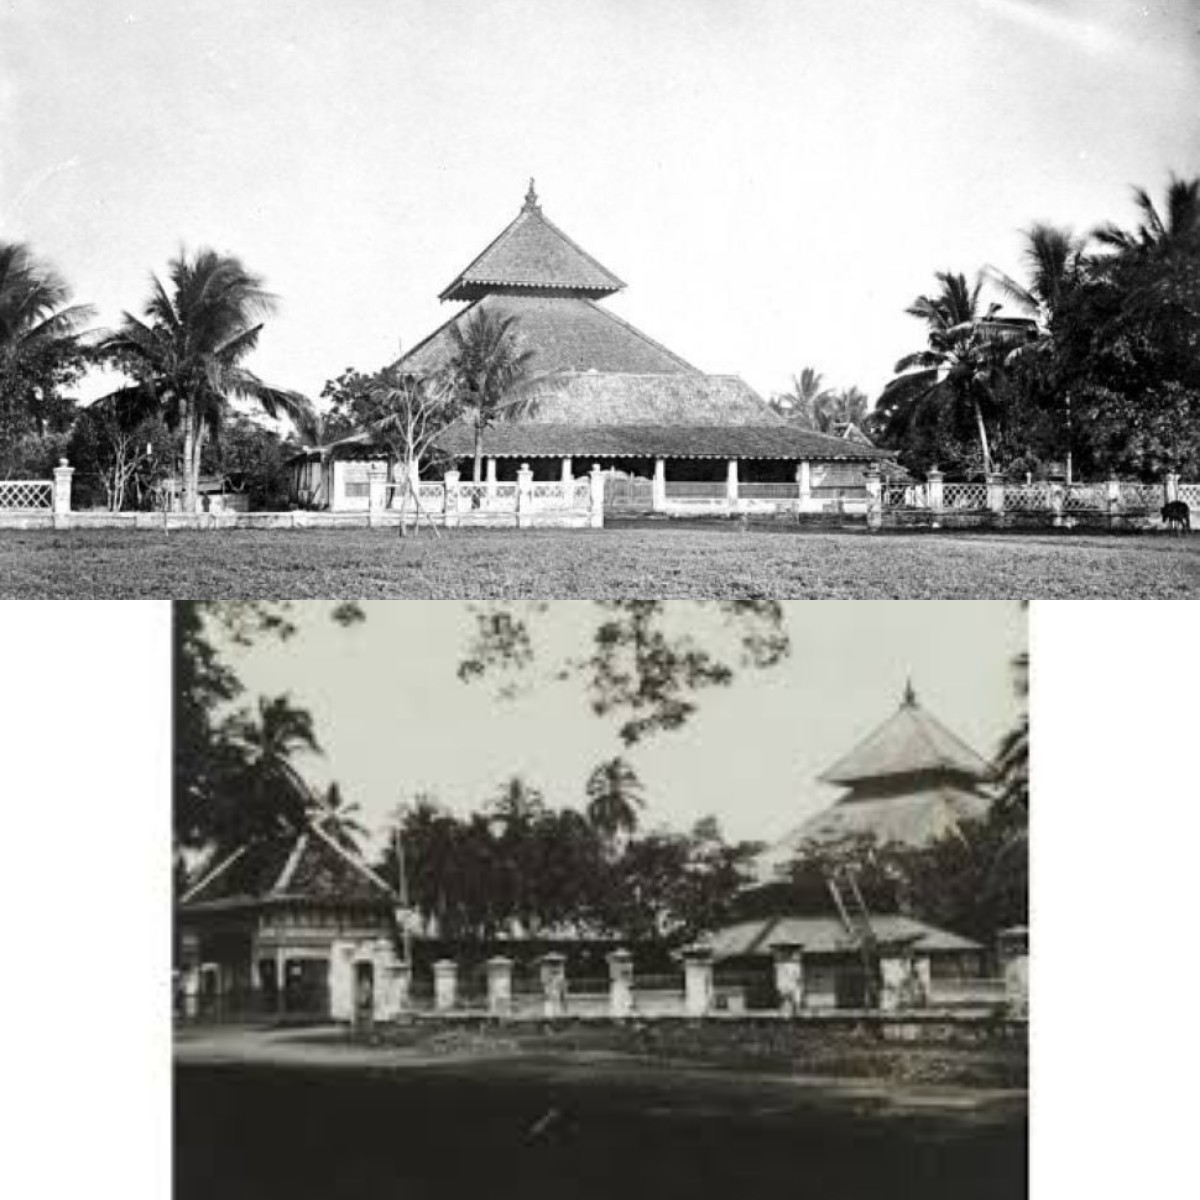 Mengenal Sejarah dan Peninggalan Kerajaan Demak di Pulau Jawa 